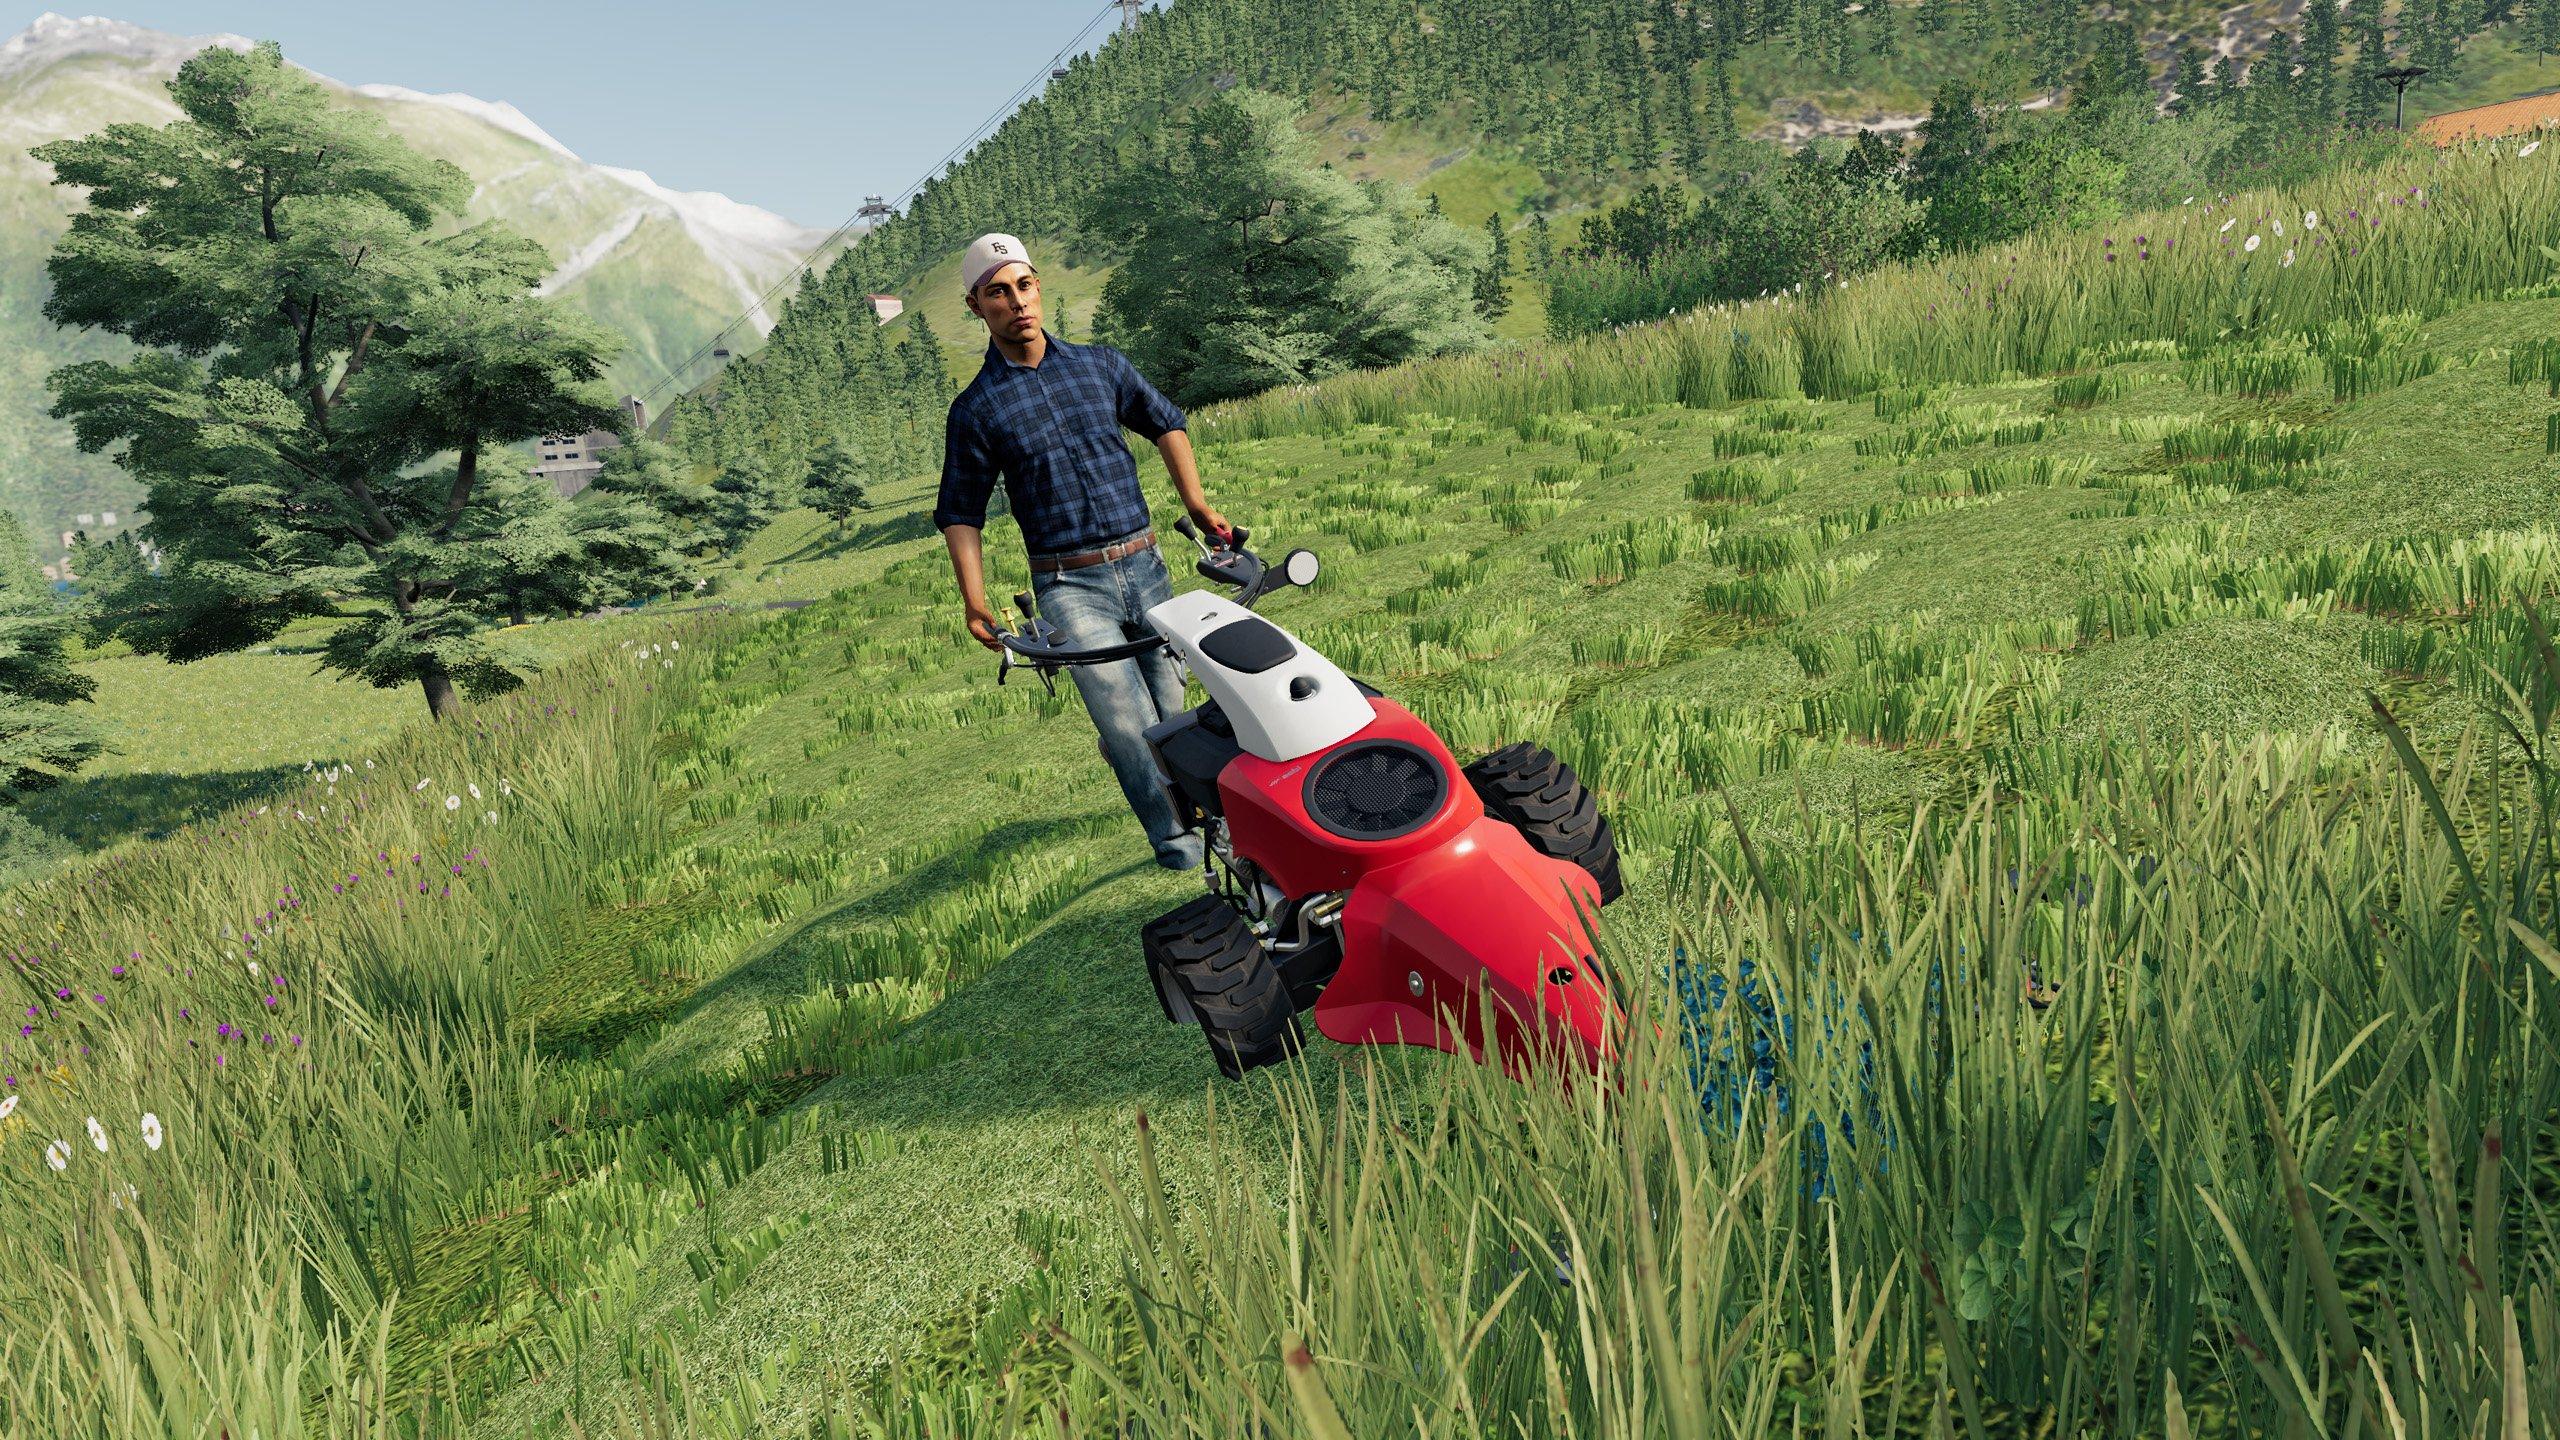 Farming Simulator 22 Premium Edition (PS4)